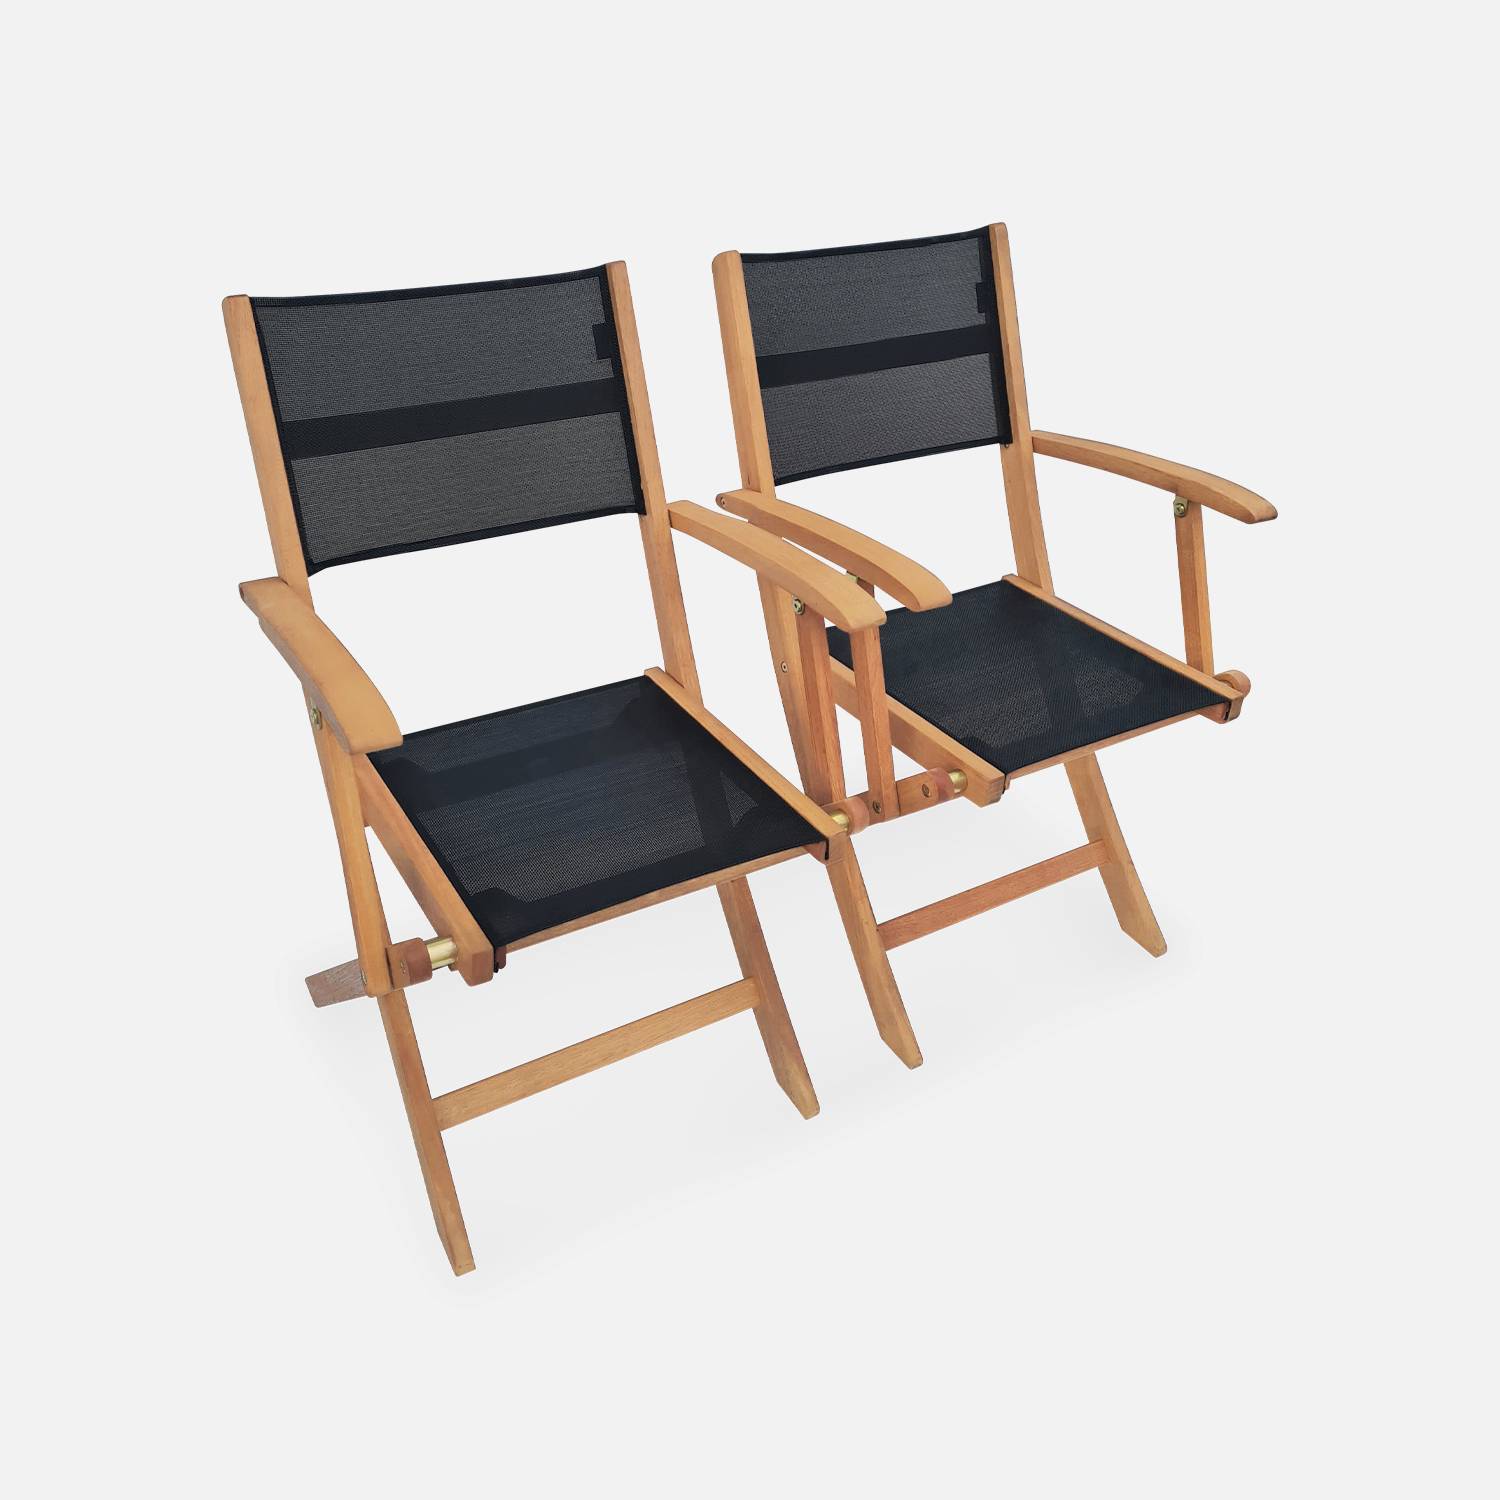 Ausziehbares Gartenmöbelset aus Holz - Almeria Tisch 200/250/300cm mit 2 Verlängerungsplatten, 2 Sesseln und 8 Stühlen, aus geöltem FSC Eukalyptusholz und schwarzem  Textilene Photo6